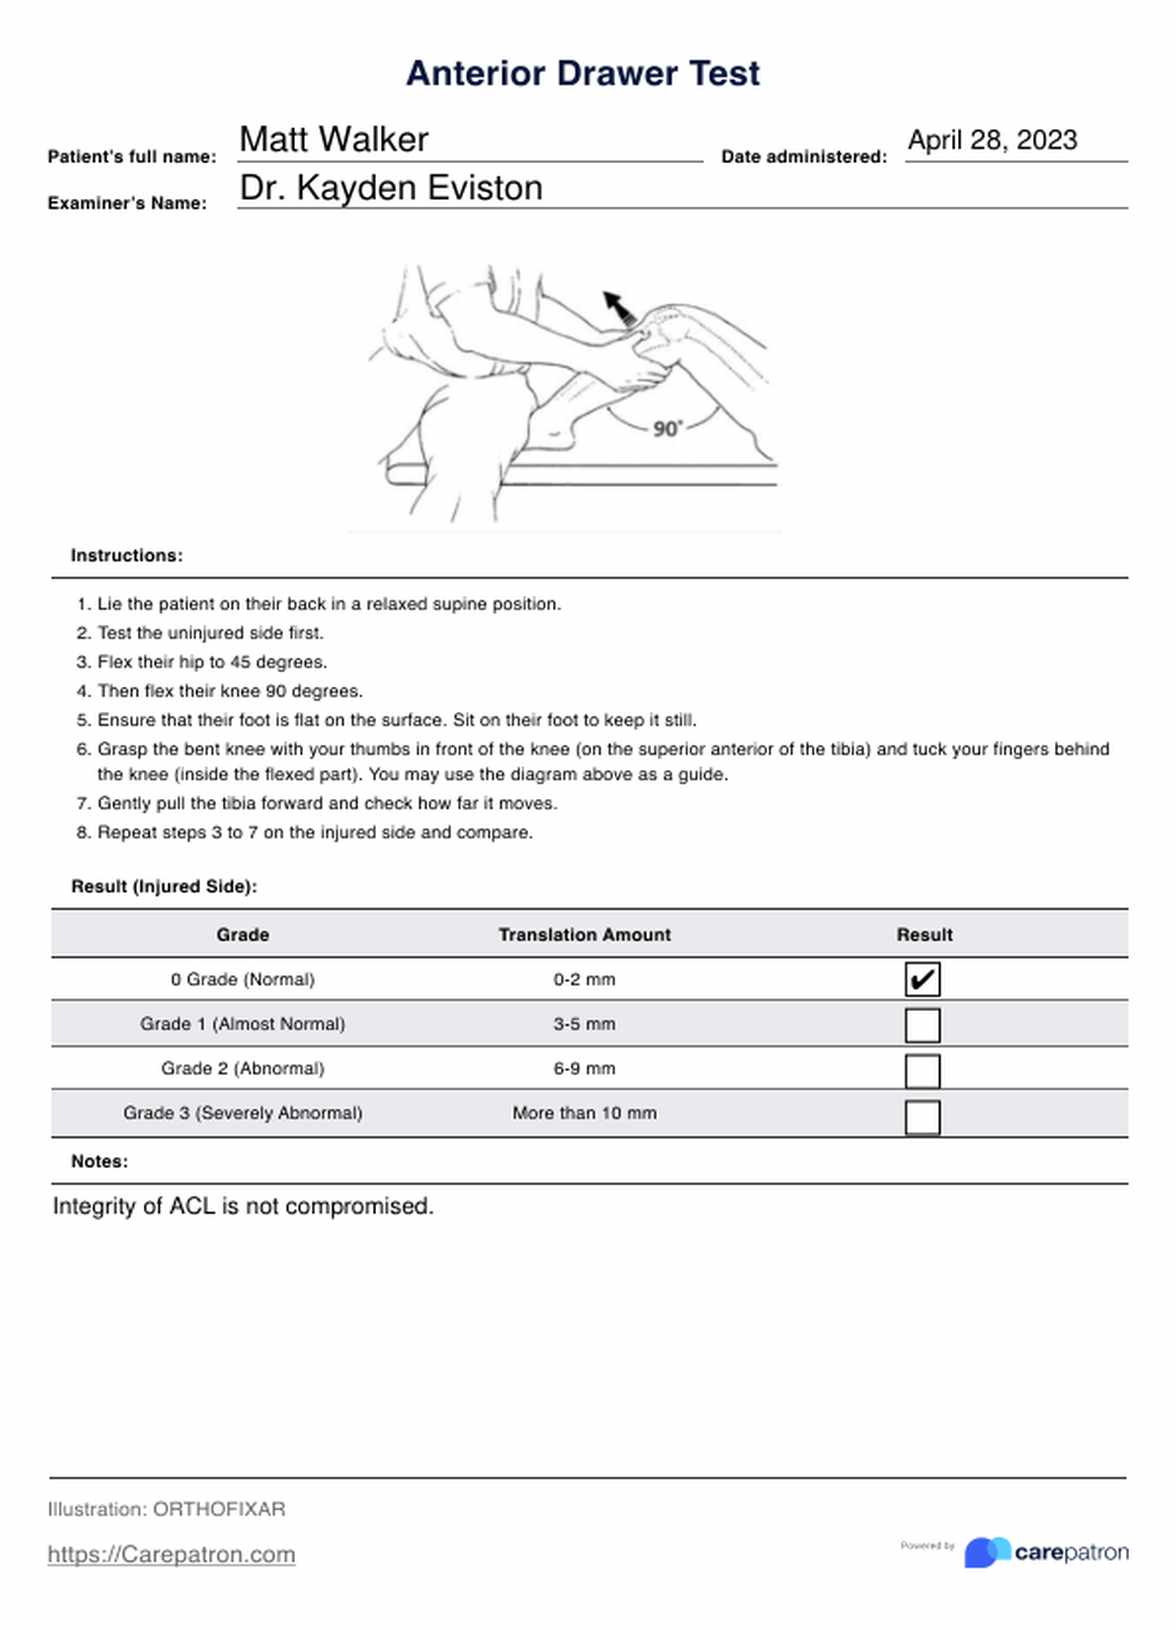 Anterior Drawer Tests PDF Example